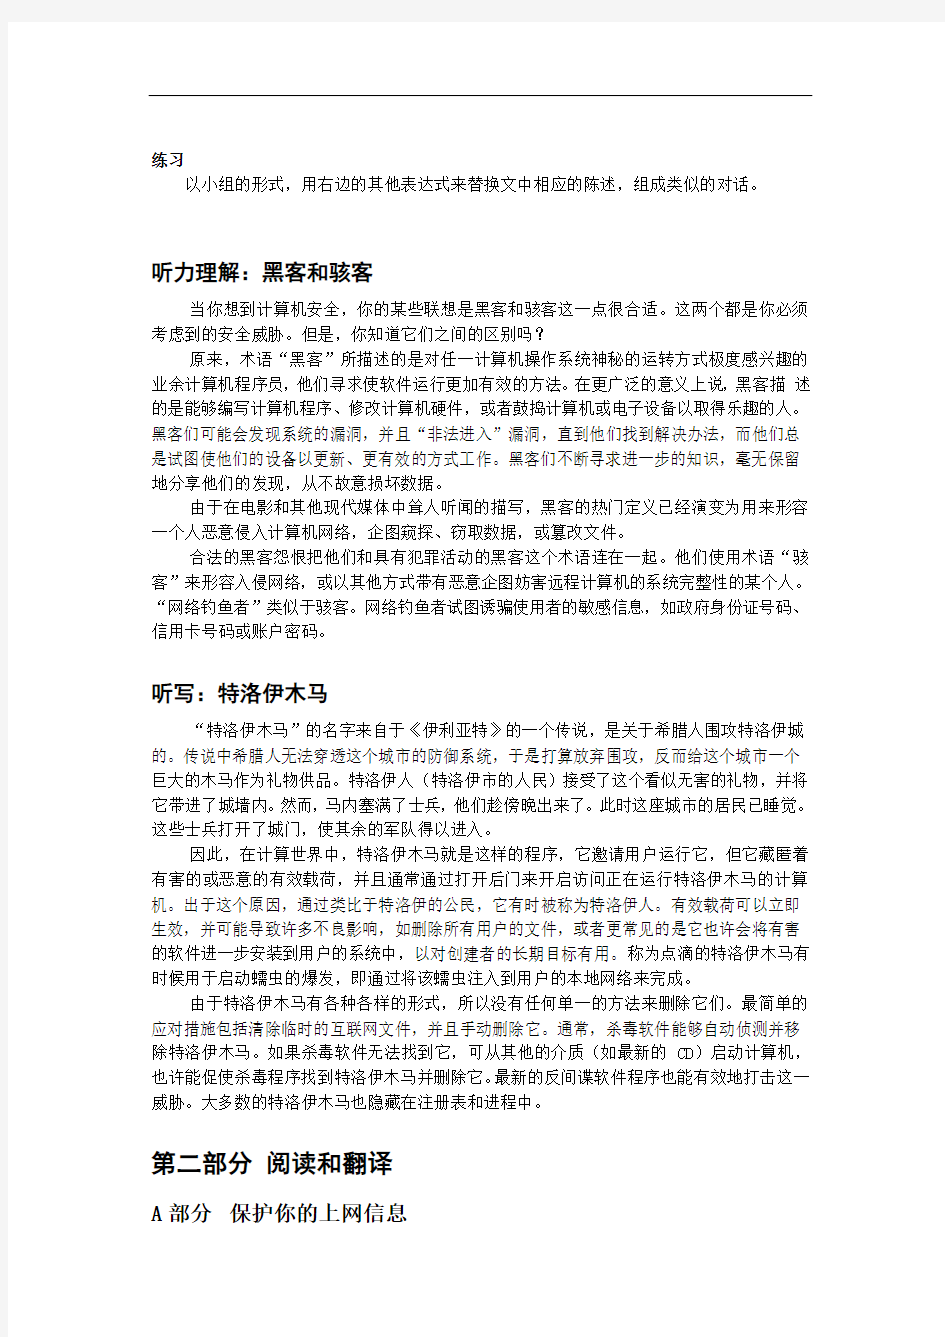 大学实用计算机英语教程第2版翻译机工版10_中文-1-1